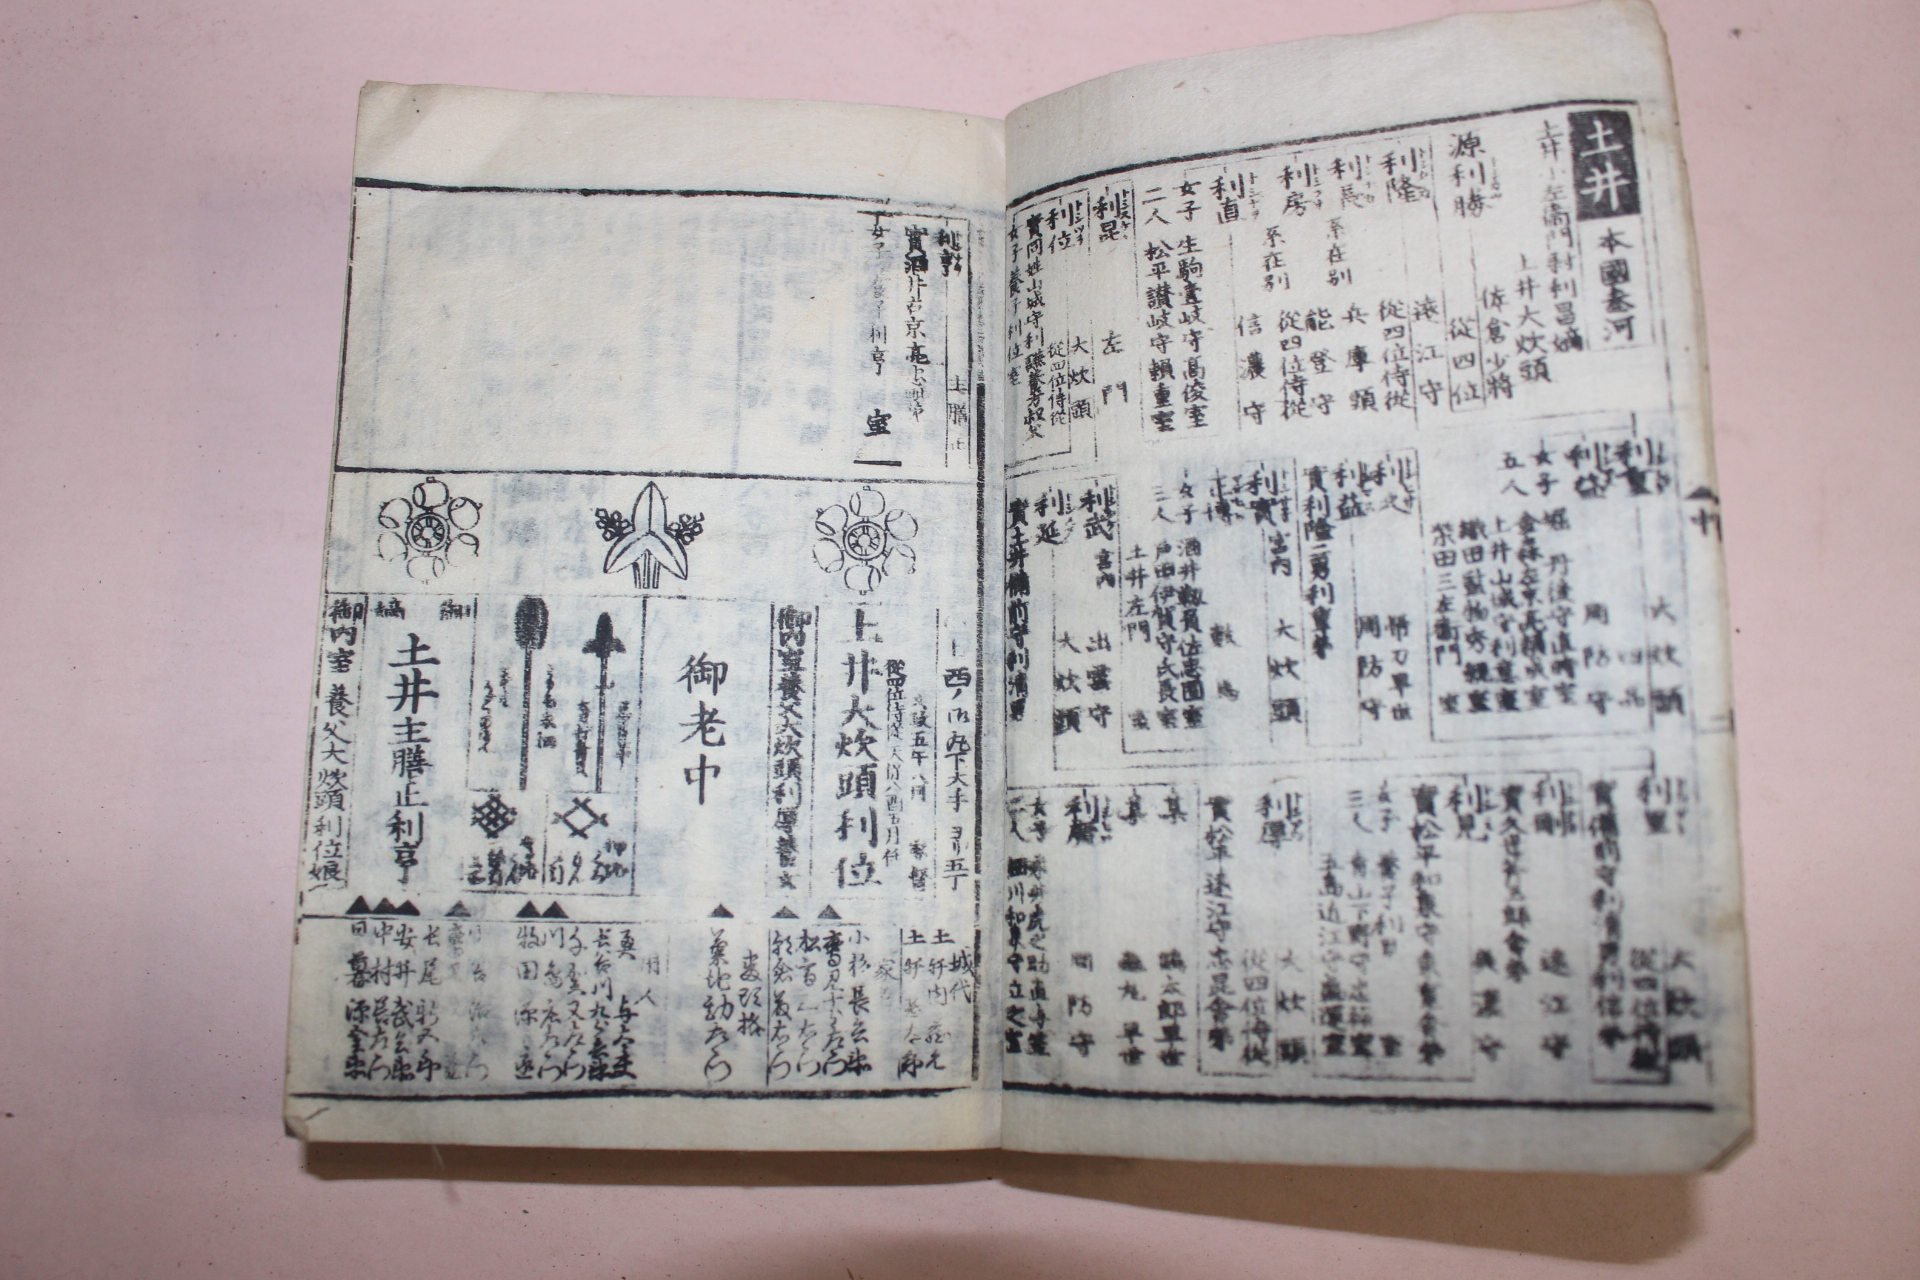 에도시기 일본목판본 강호시기의 문중마크와 무기류가 수록된 책